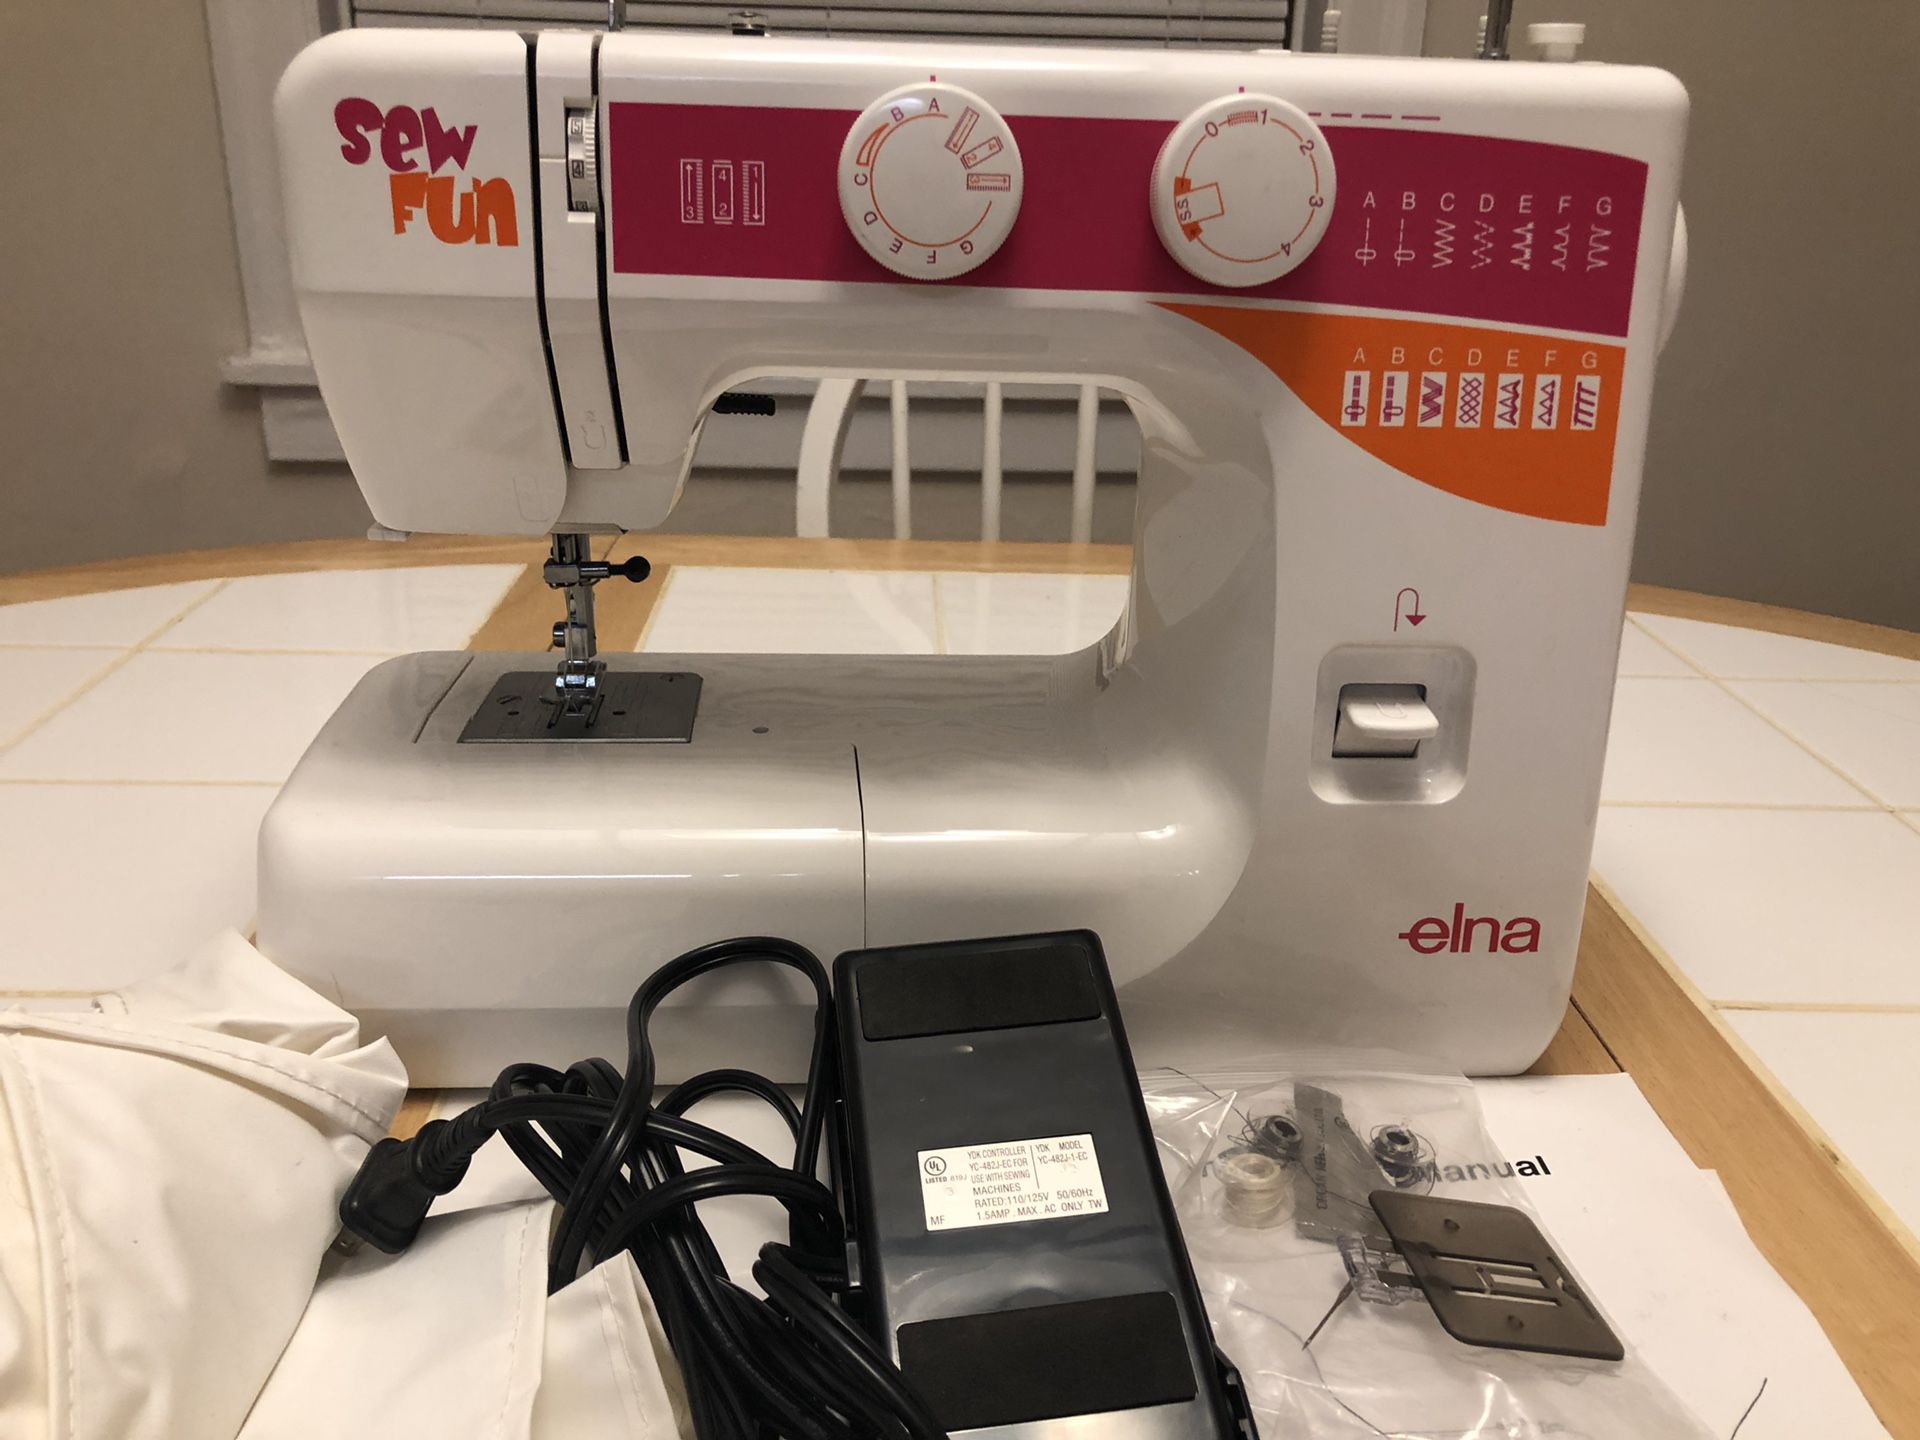 Elna sew fun sewing machine - used 4 times